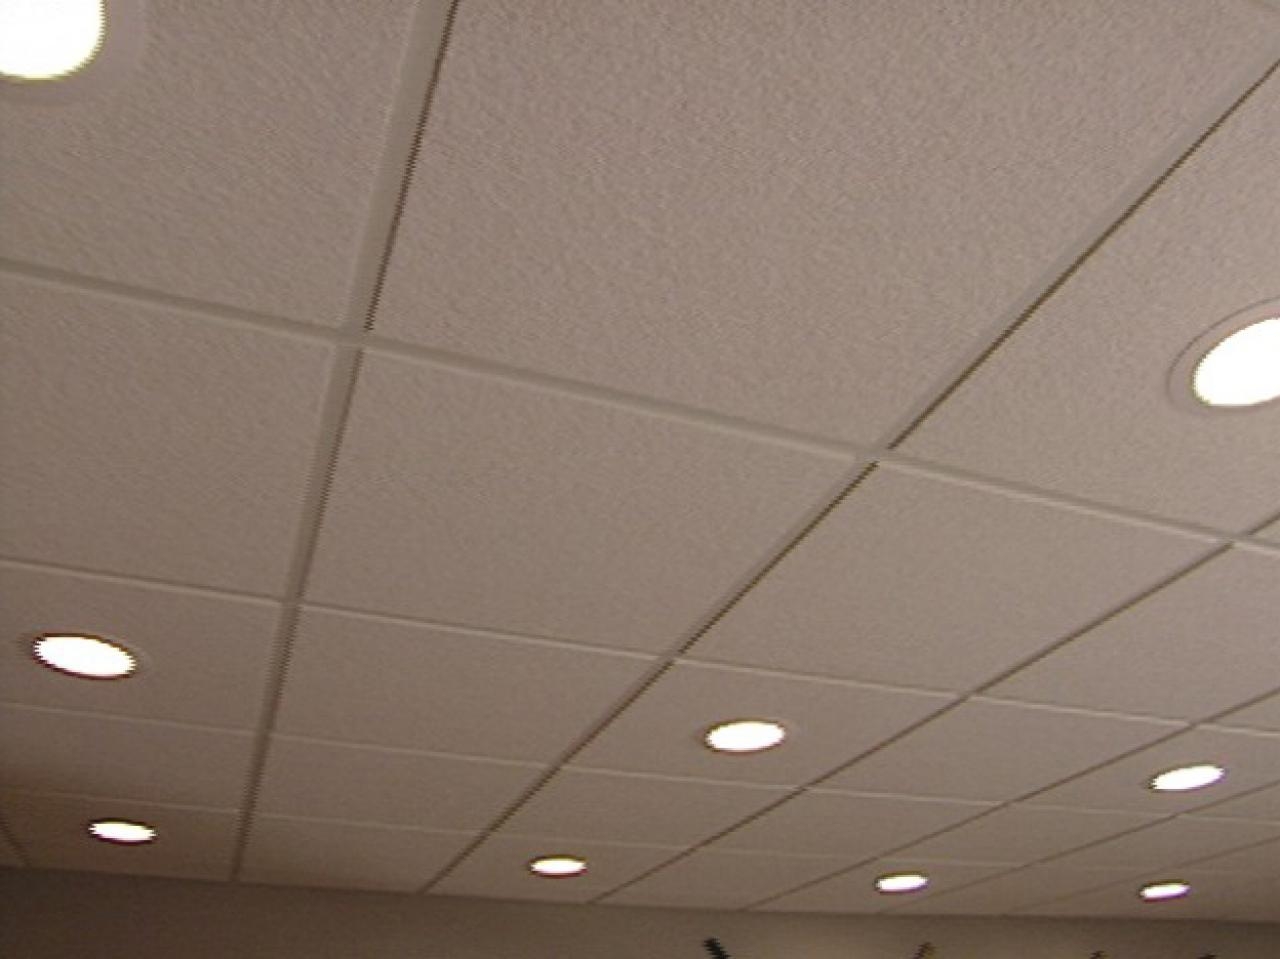 Lighting For Drop Ceiling Tilesbasement ceiling tiles lamps modern ceiling design stylish